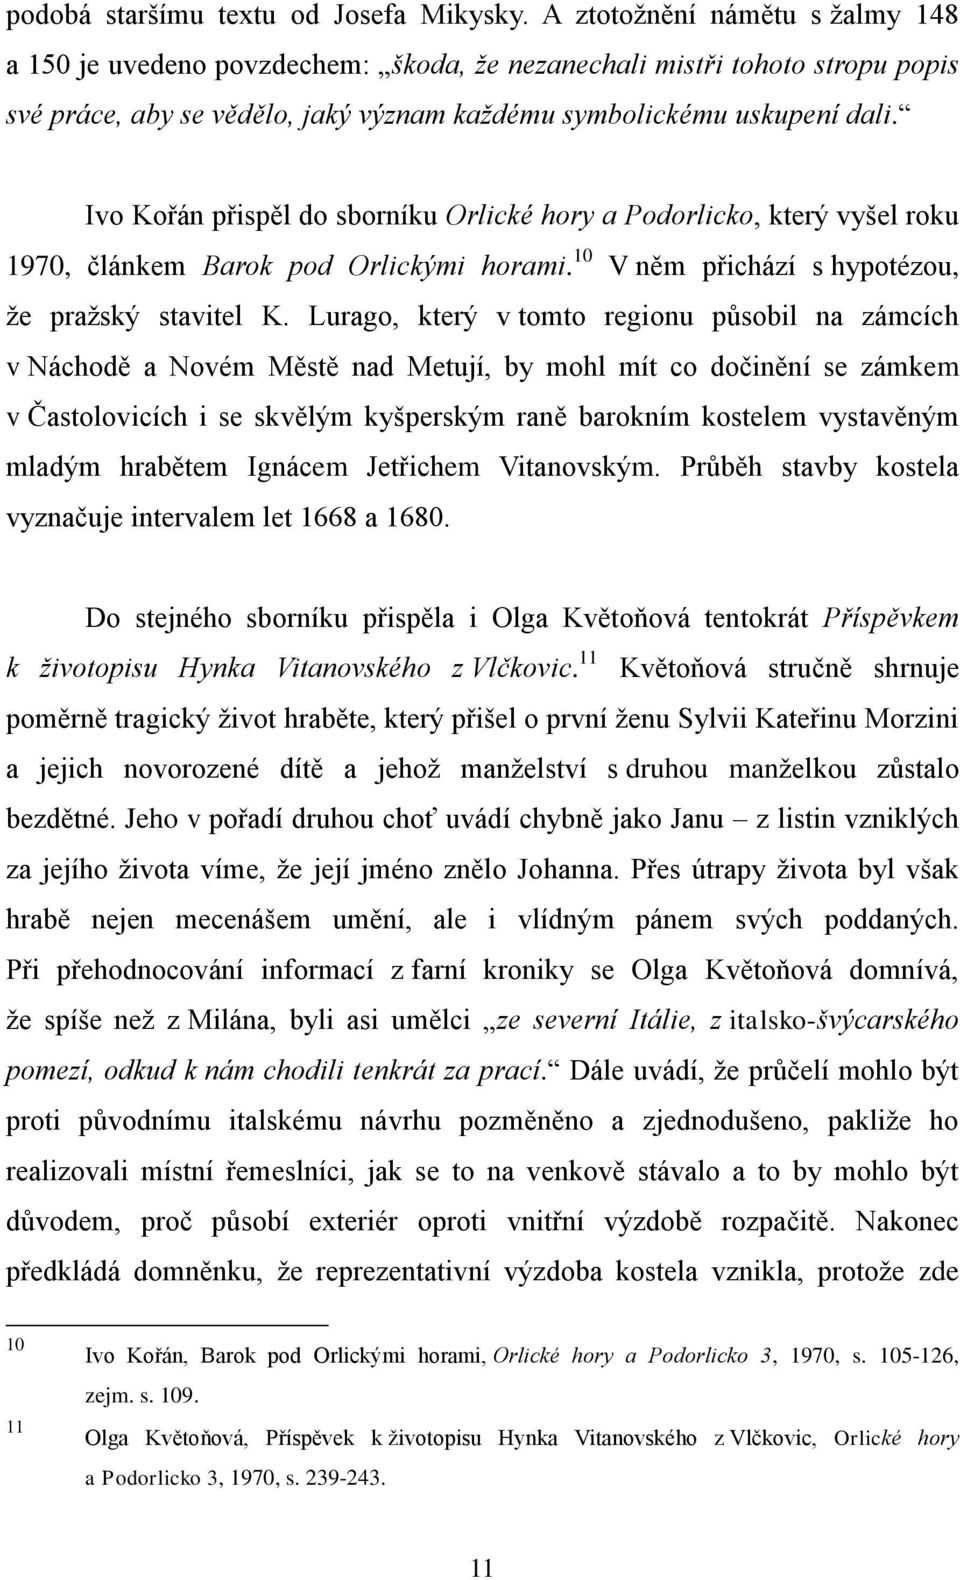 Ivo Kořán přispěl do sborníku Orlické hory a Podorlicko, který vyšel roku 1970, článkem Barok pod Orlickými horami. 10 V něm přichází s hypotézou, že pražský stavitel K.